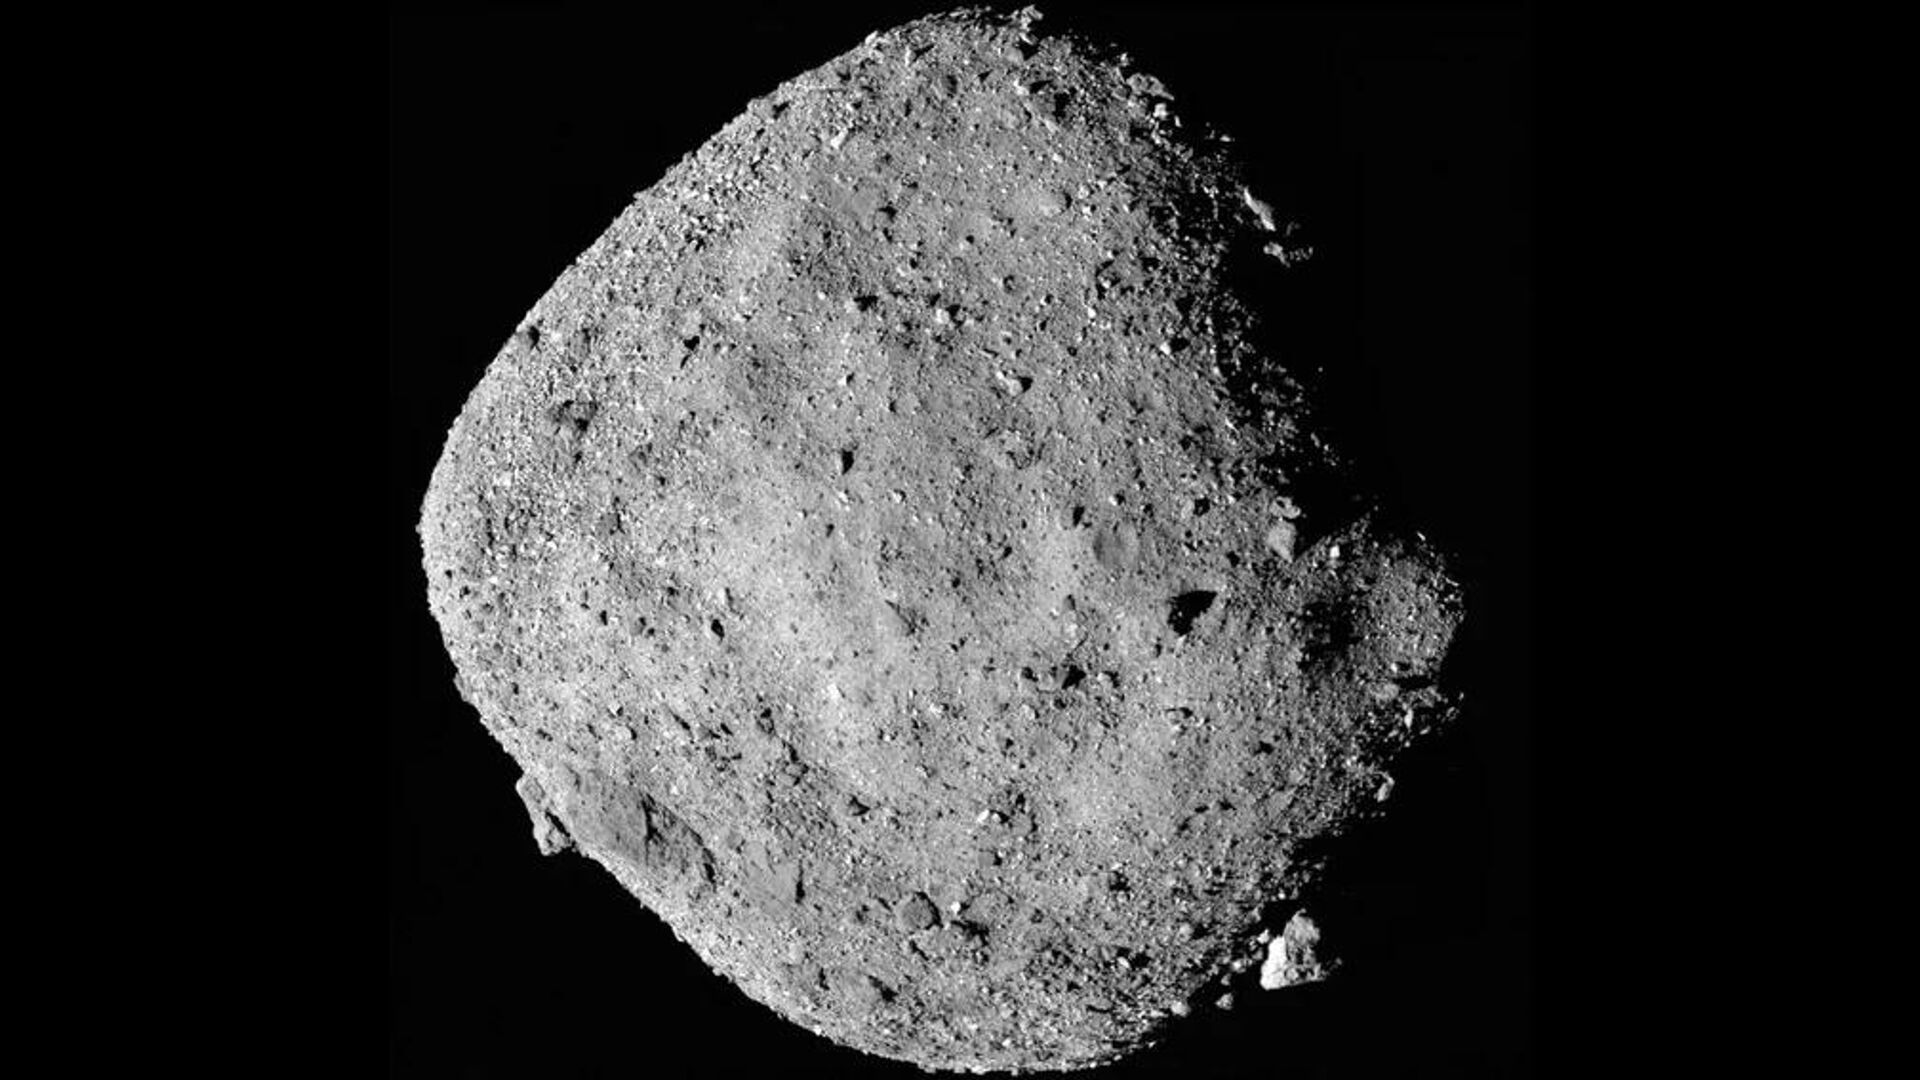 Фото астероида Бенну, сделанное 2 декабря 2018-го аппаратом НАСА OSIRIS-REx с расстояния 24 километра - Sputnik Армения, 1920, 10.08.2022